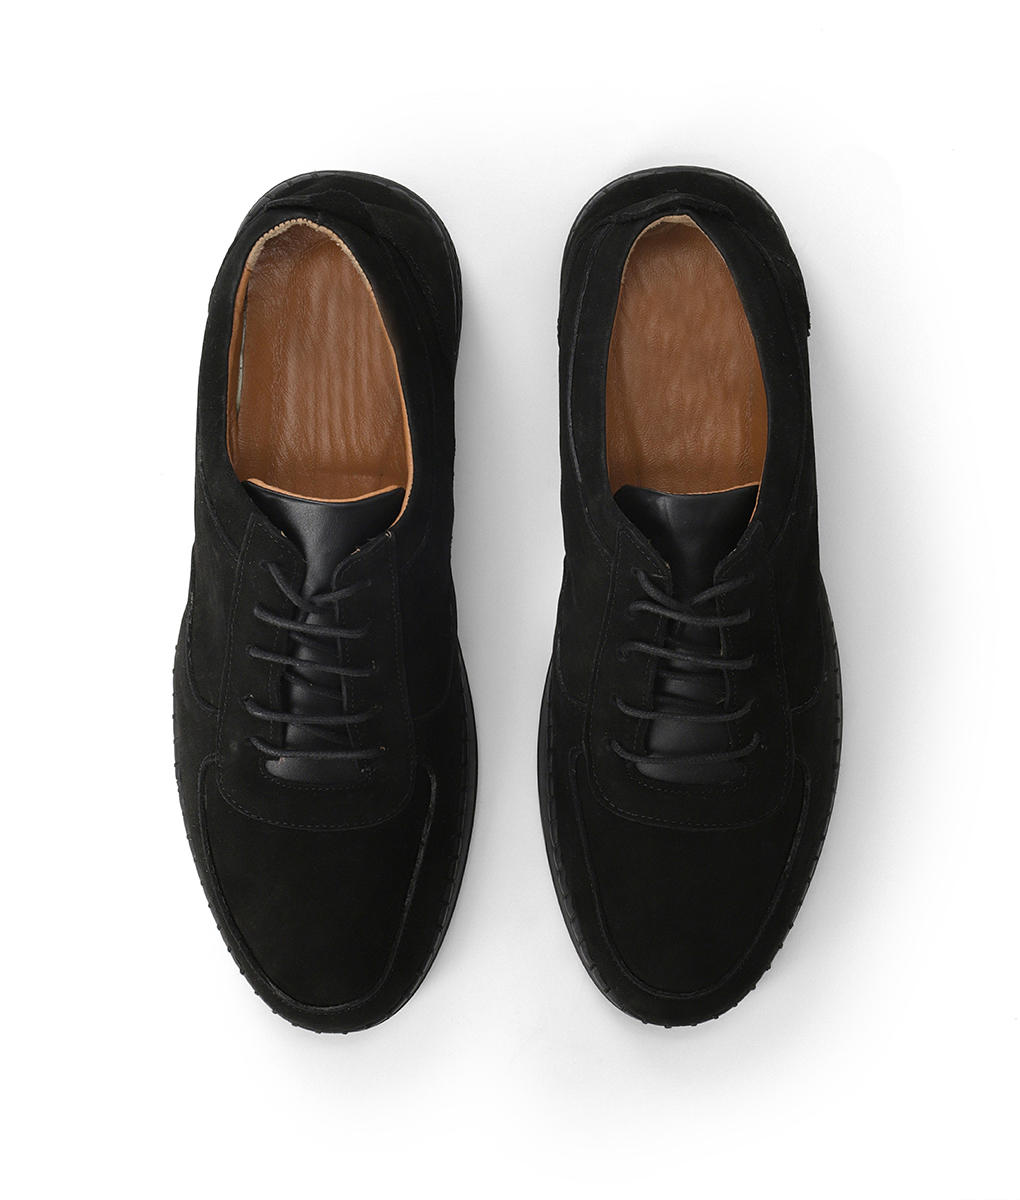 Men's Snug Fit Black Suede Leather Shoes